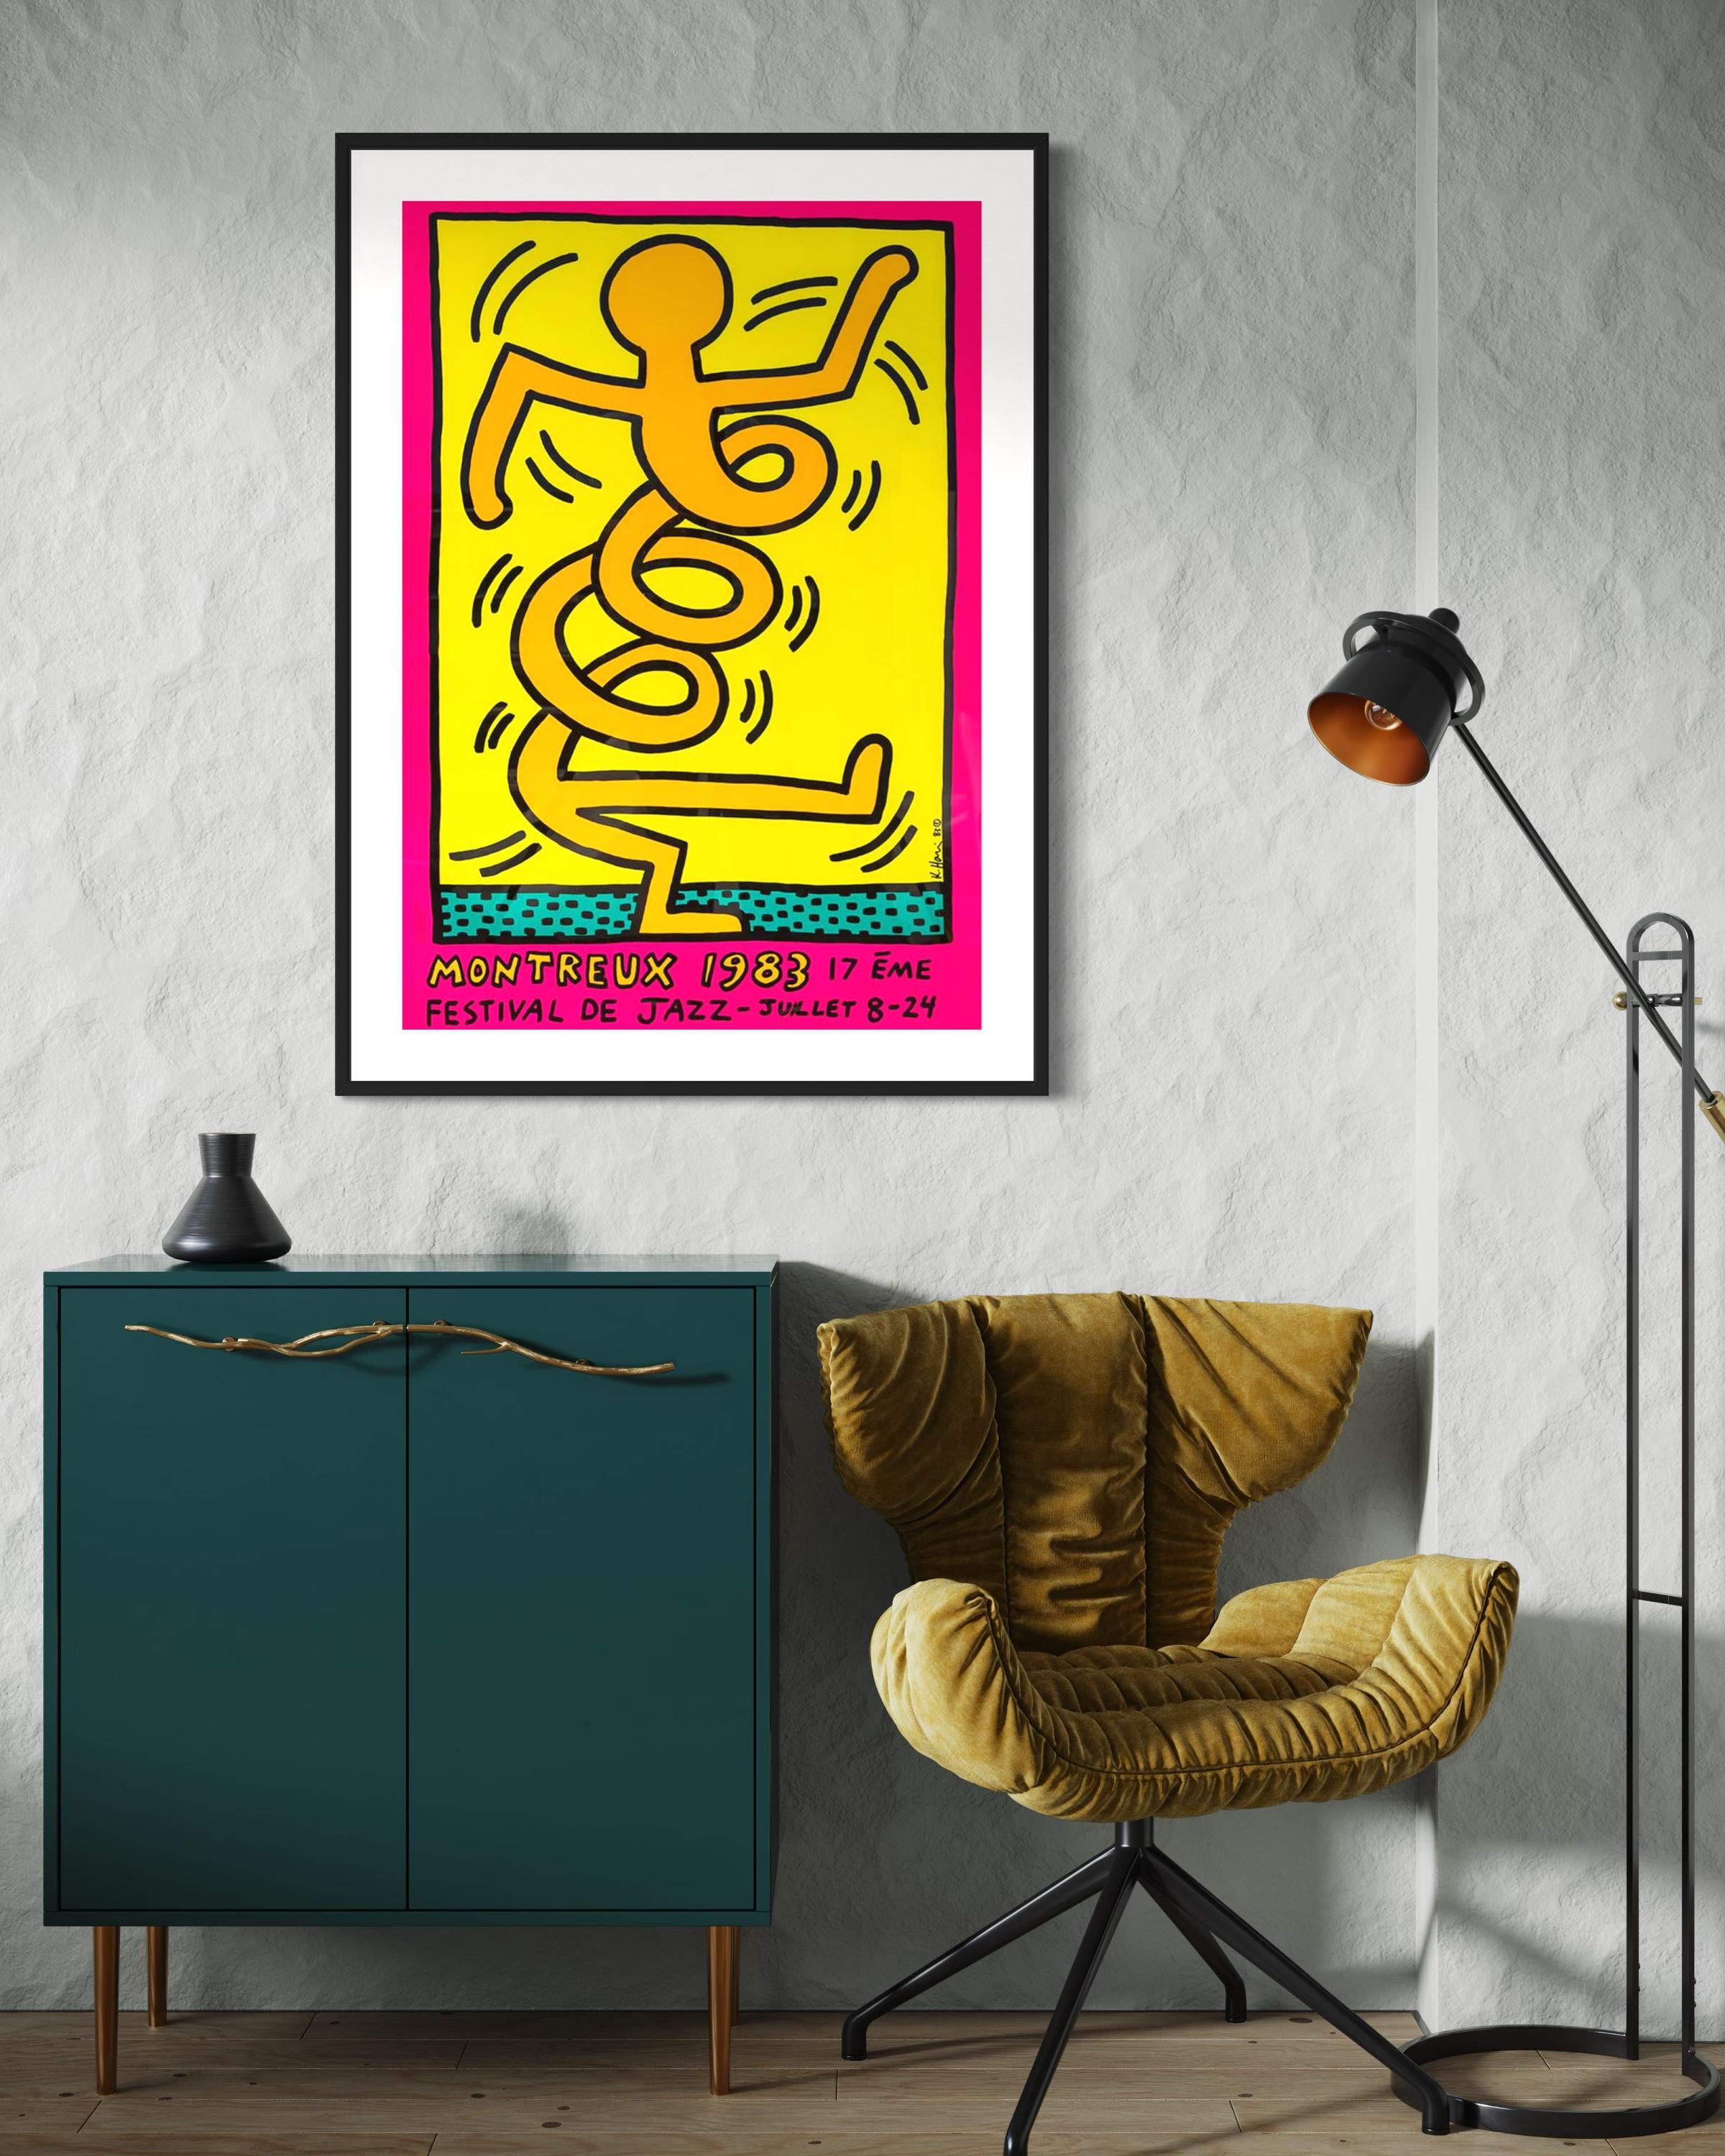 Titre : Montreux Jazz Festival 1983 par Keith Haring 1986

Support : Sérigraphie en couleurs sur papier couché demi-mat de 250 gr.

Imprimeur : Albin Uldry

Taille : 70 x 100 cm (27.6 x 39.4 in)

Signature : Plaque signée par Keith Haring 

Edition